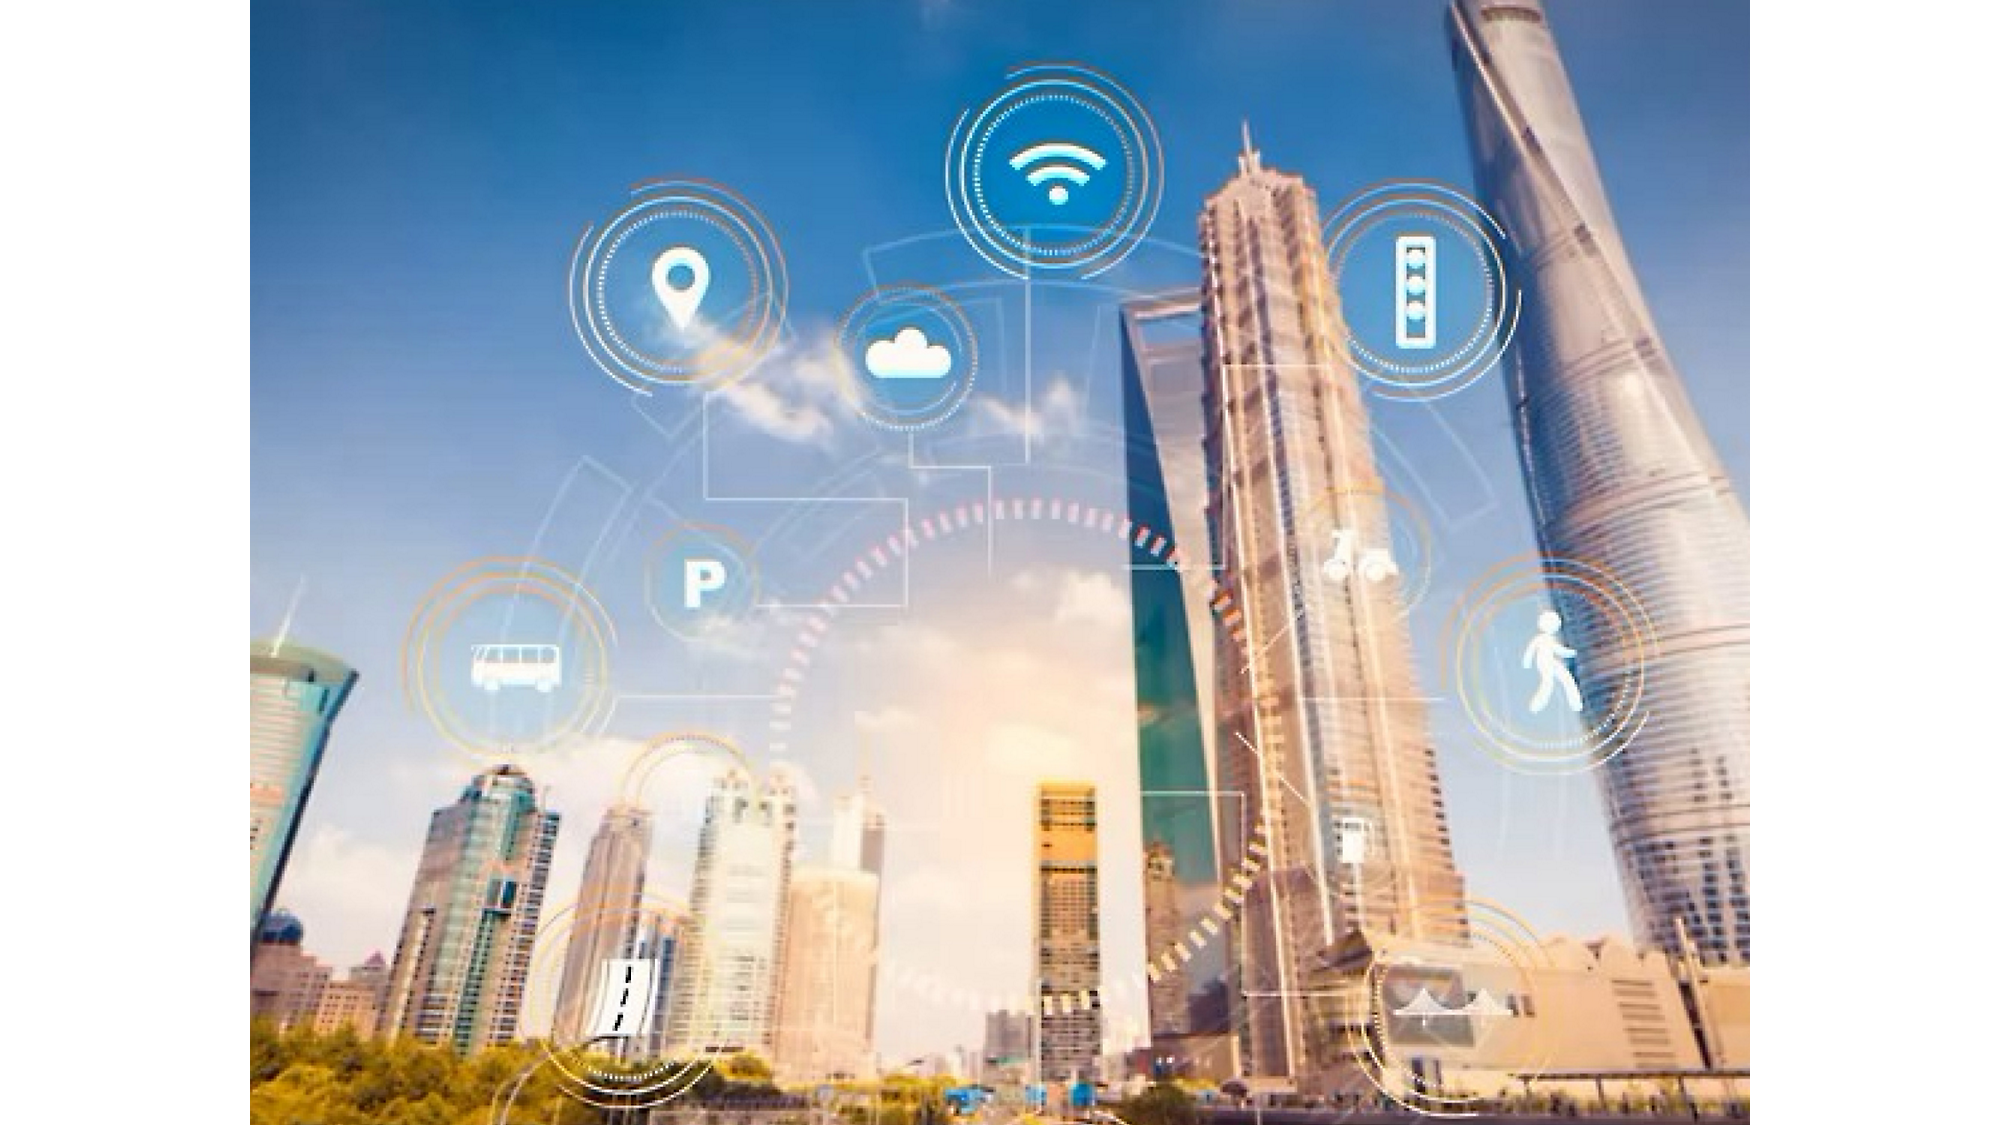 Viedas pilsētas attēls ar digitālajām ikonām, kas attēlo Wi-Fi,mākoņdatošanu un citas tehnoloģijas ar debesskrāpjiem.